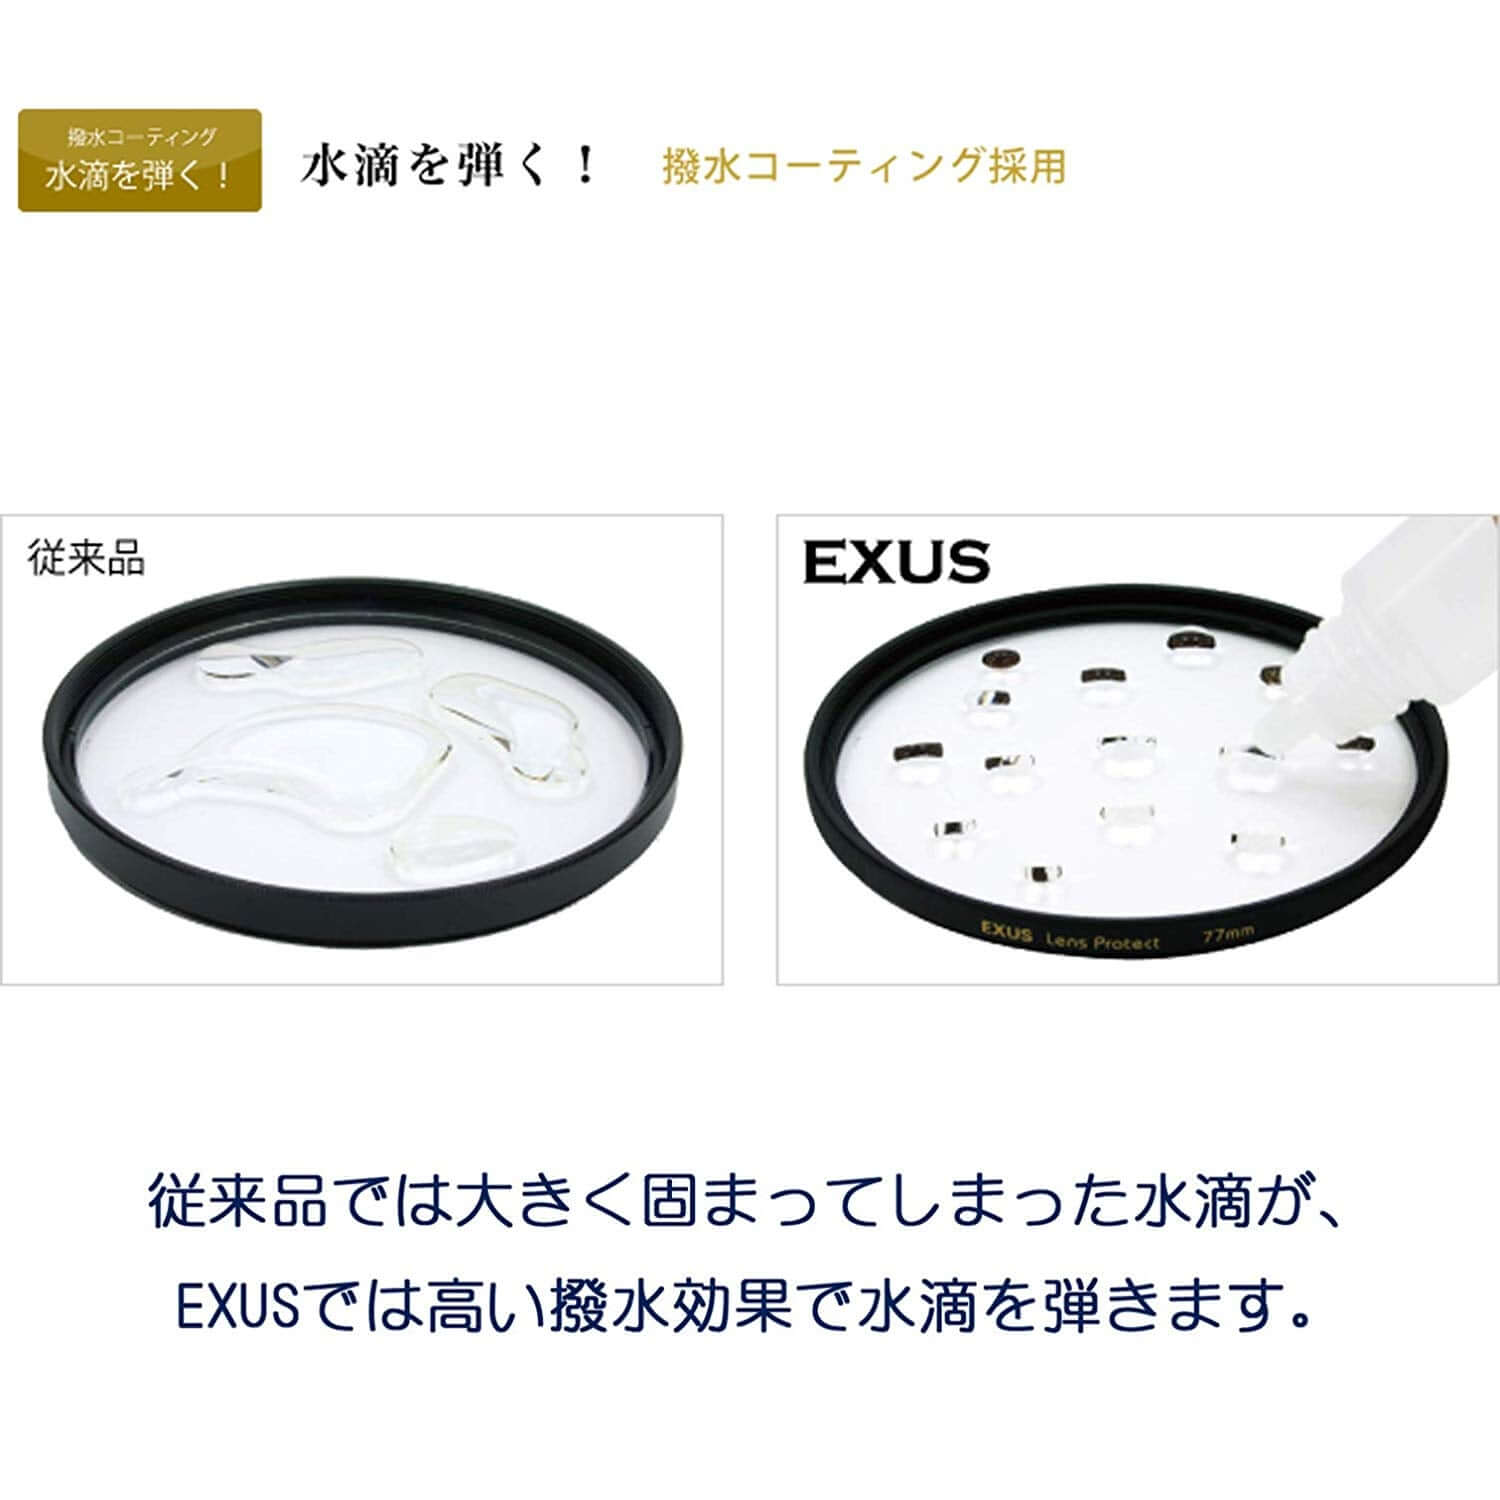 EXUS レンズプロテクト 72mm